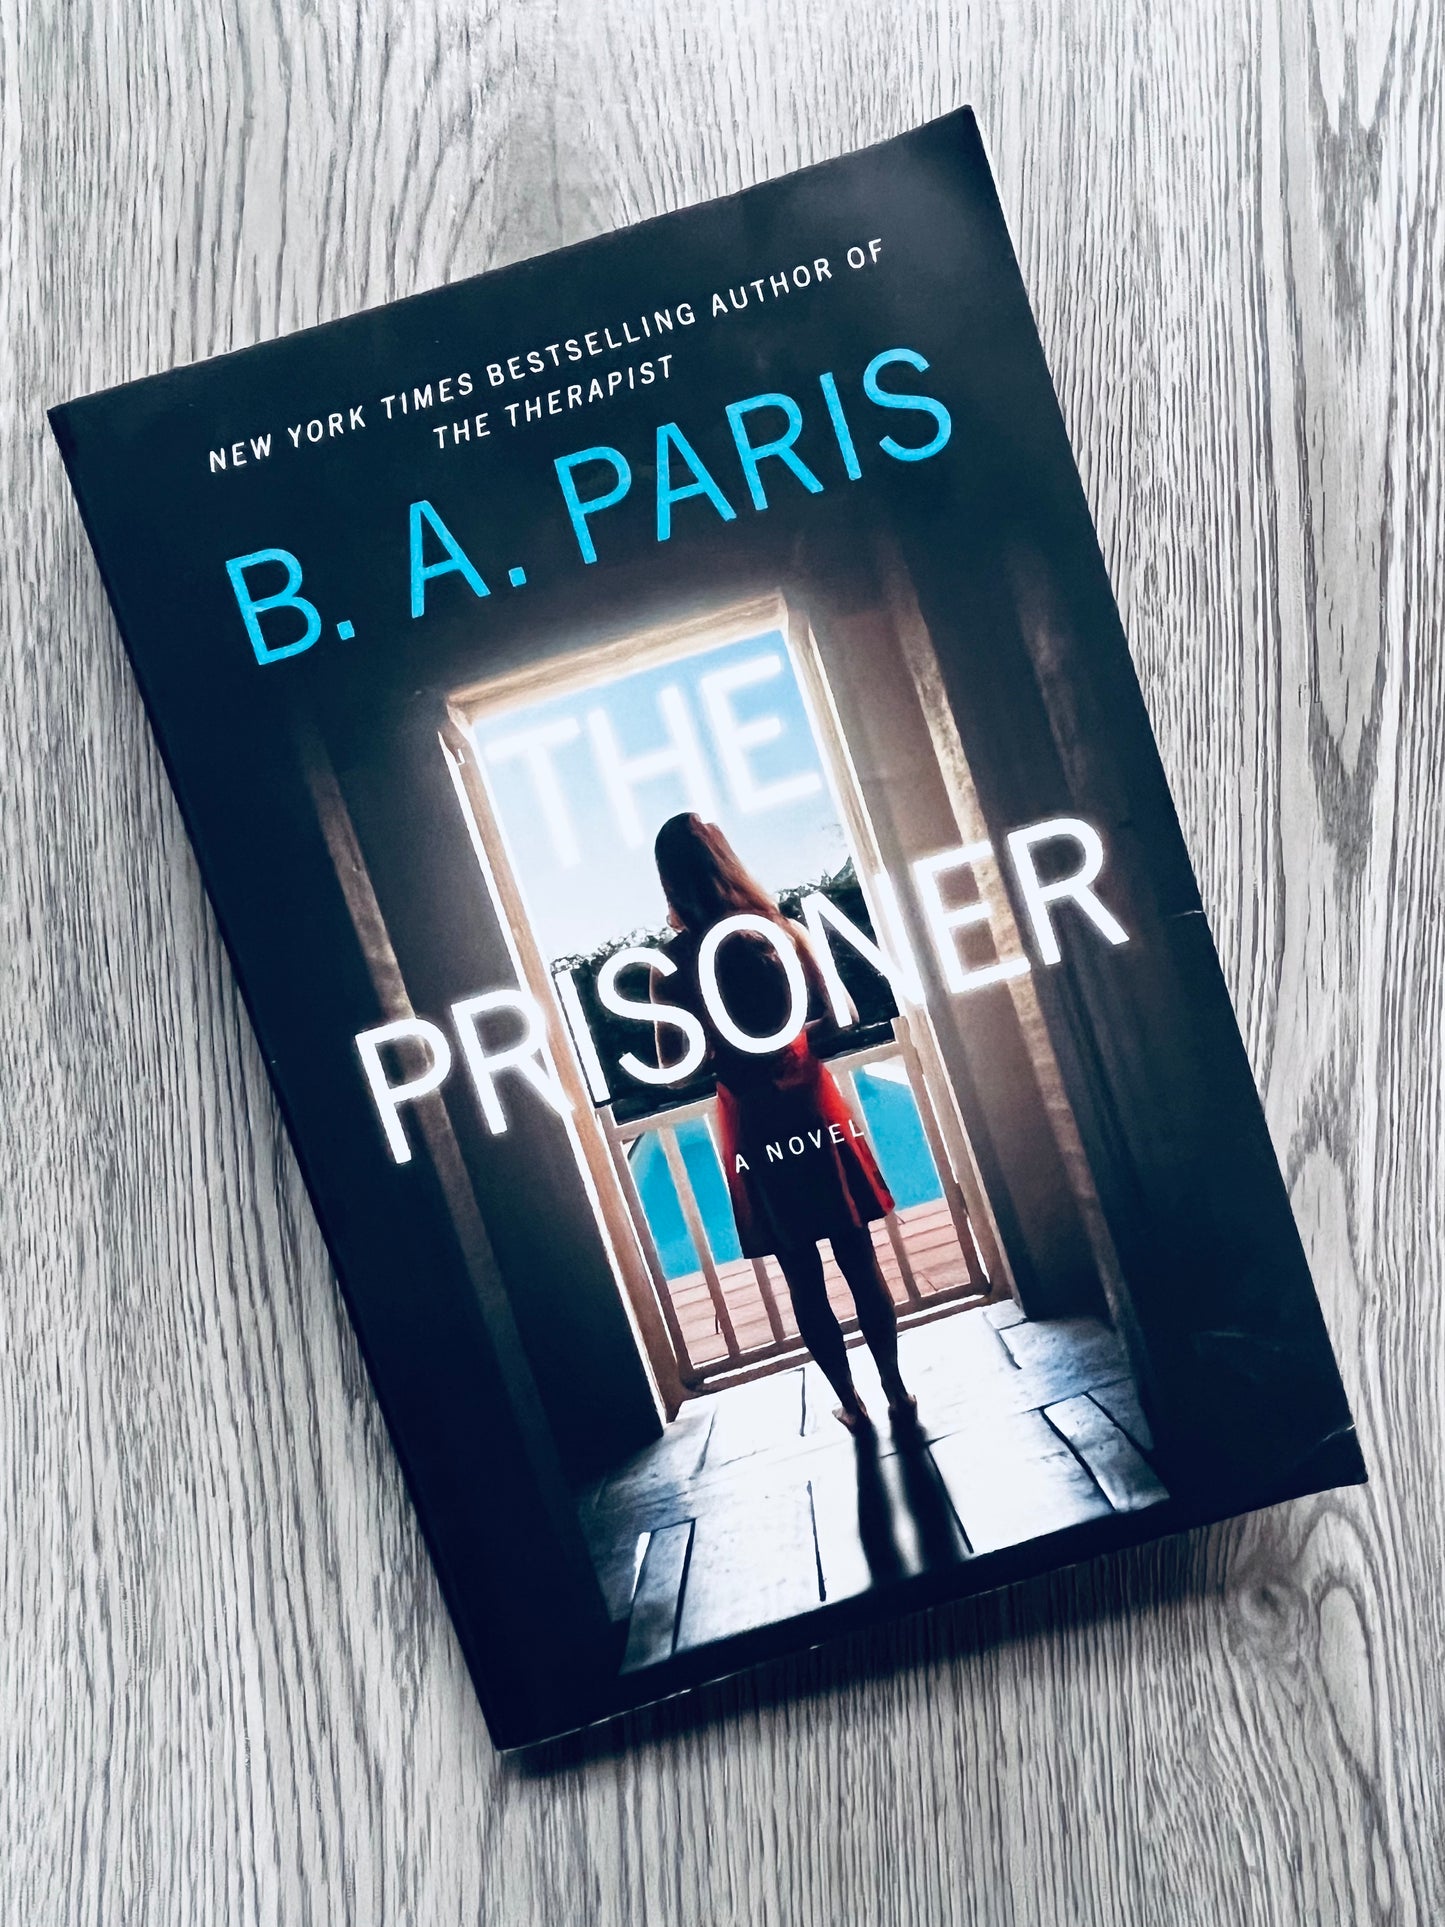 The Prisoner by B.A. Paris